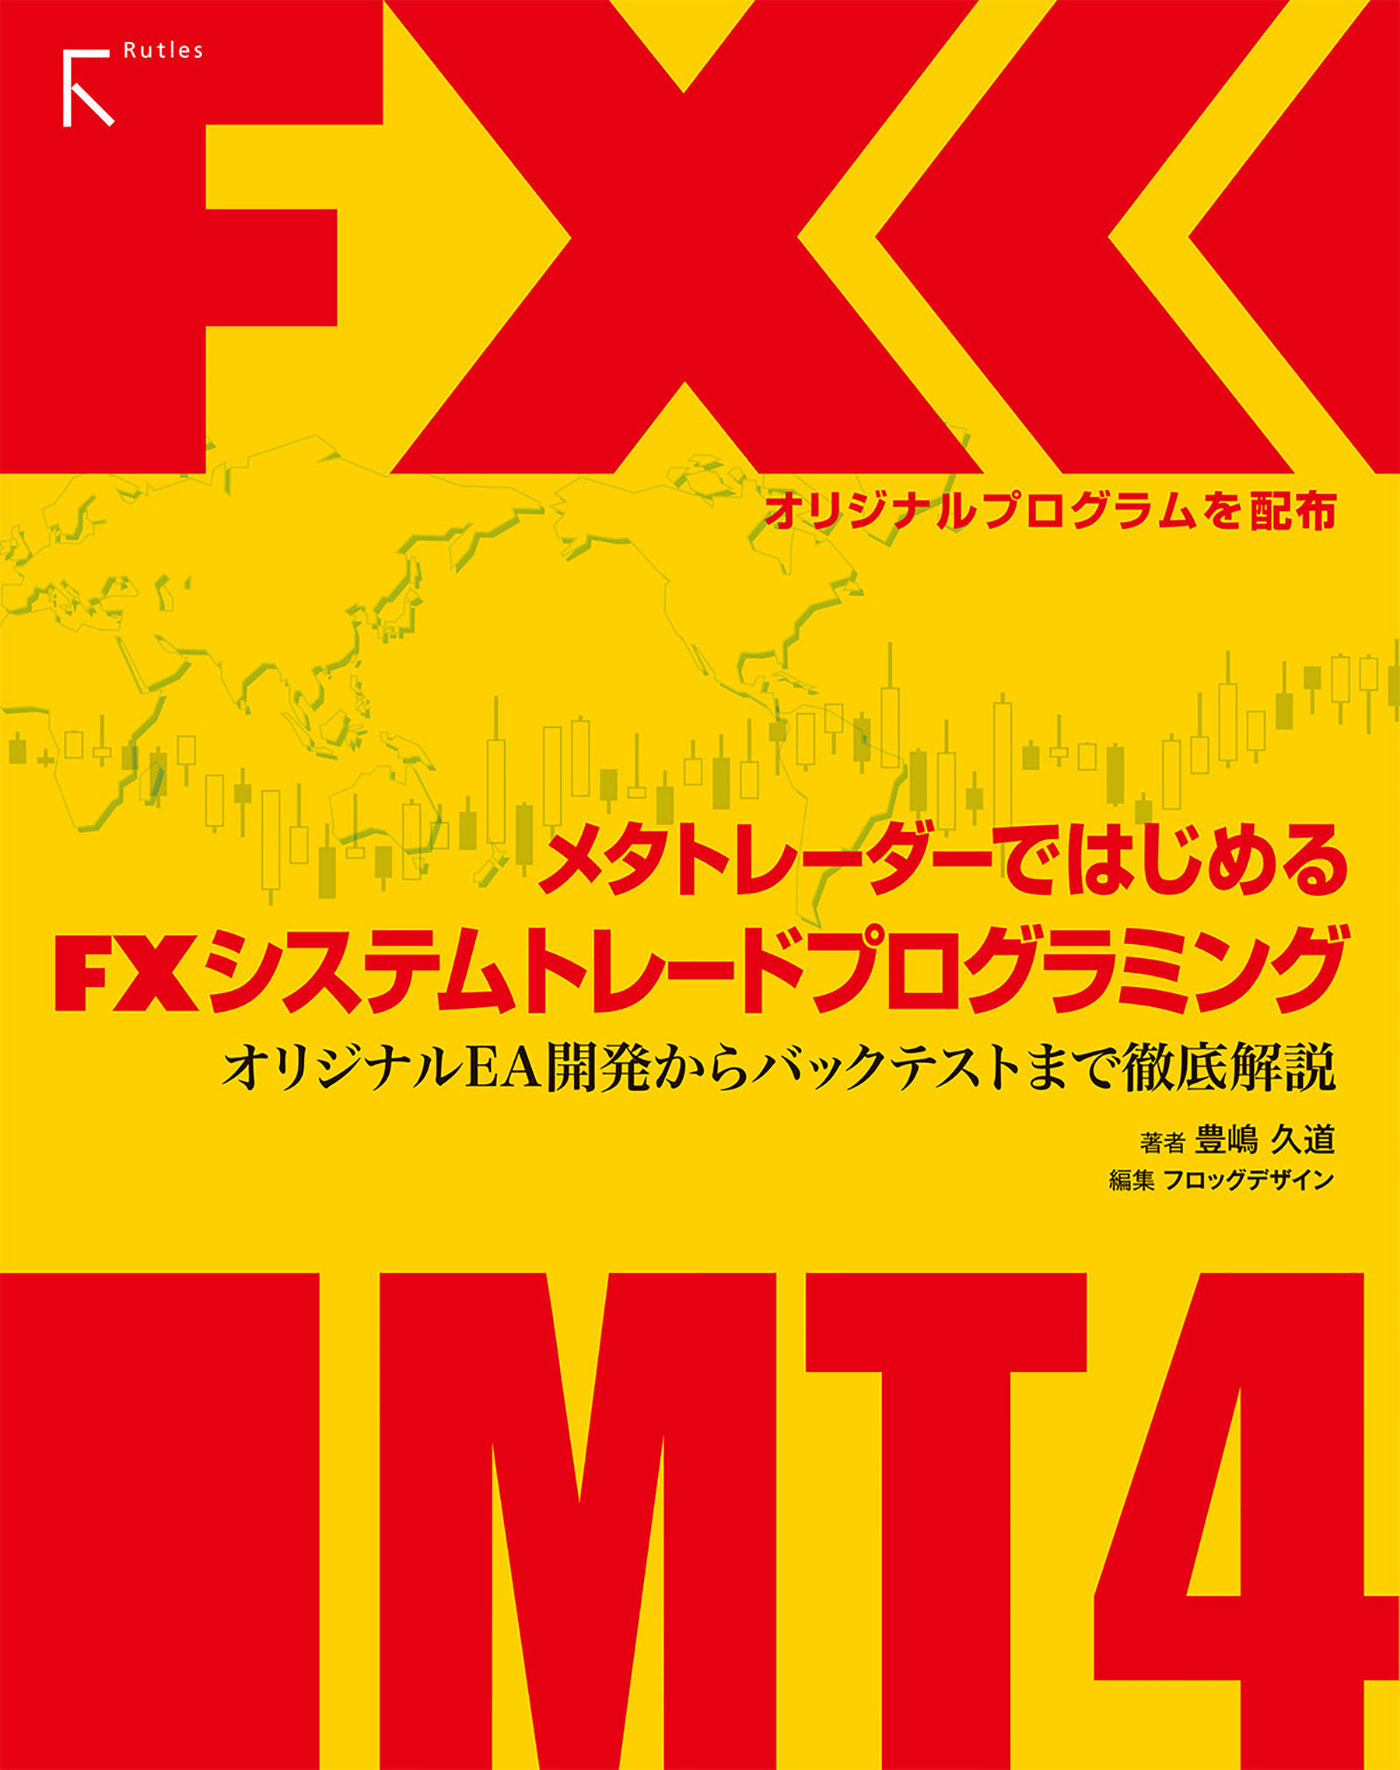 販売実績No.1 FX メタトレーダー 入門 asakusa.sub.jp